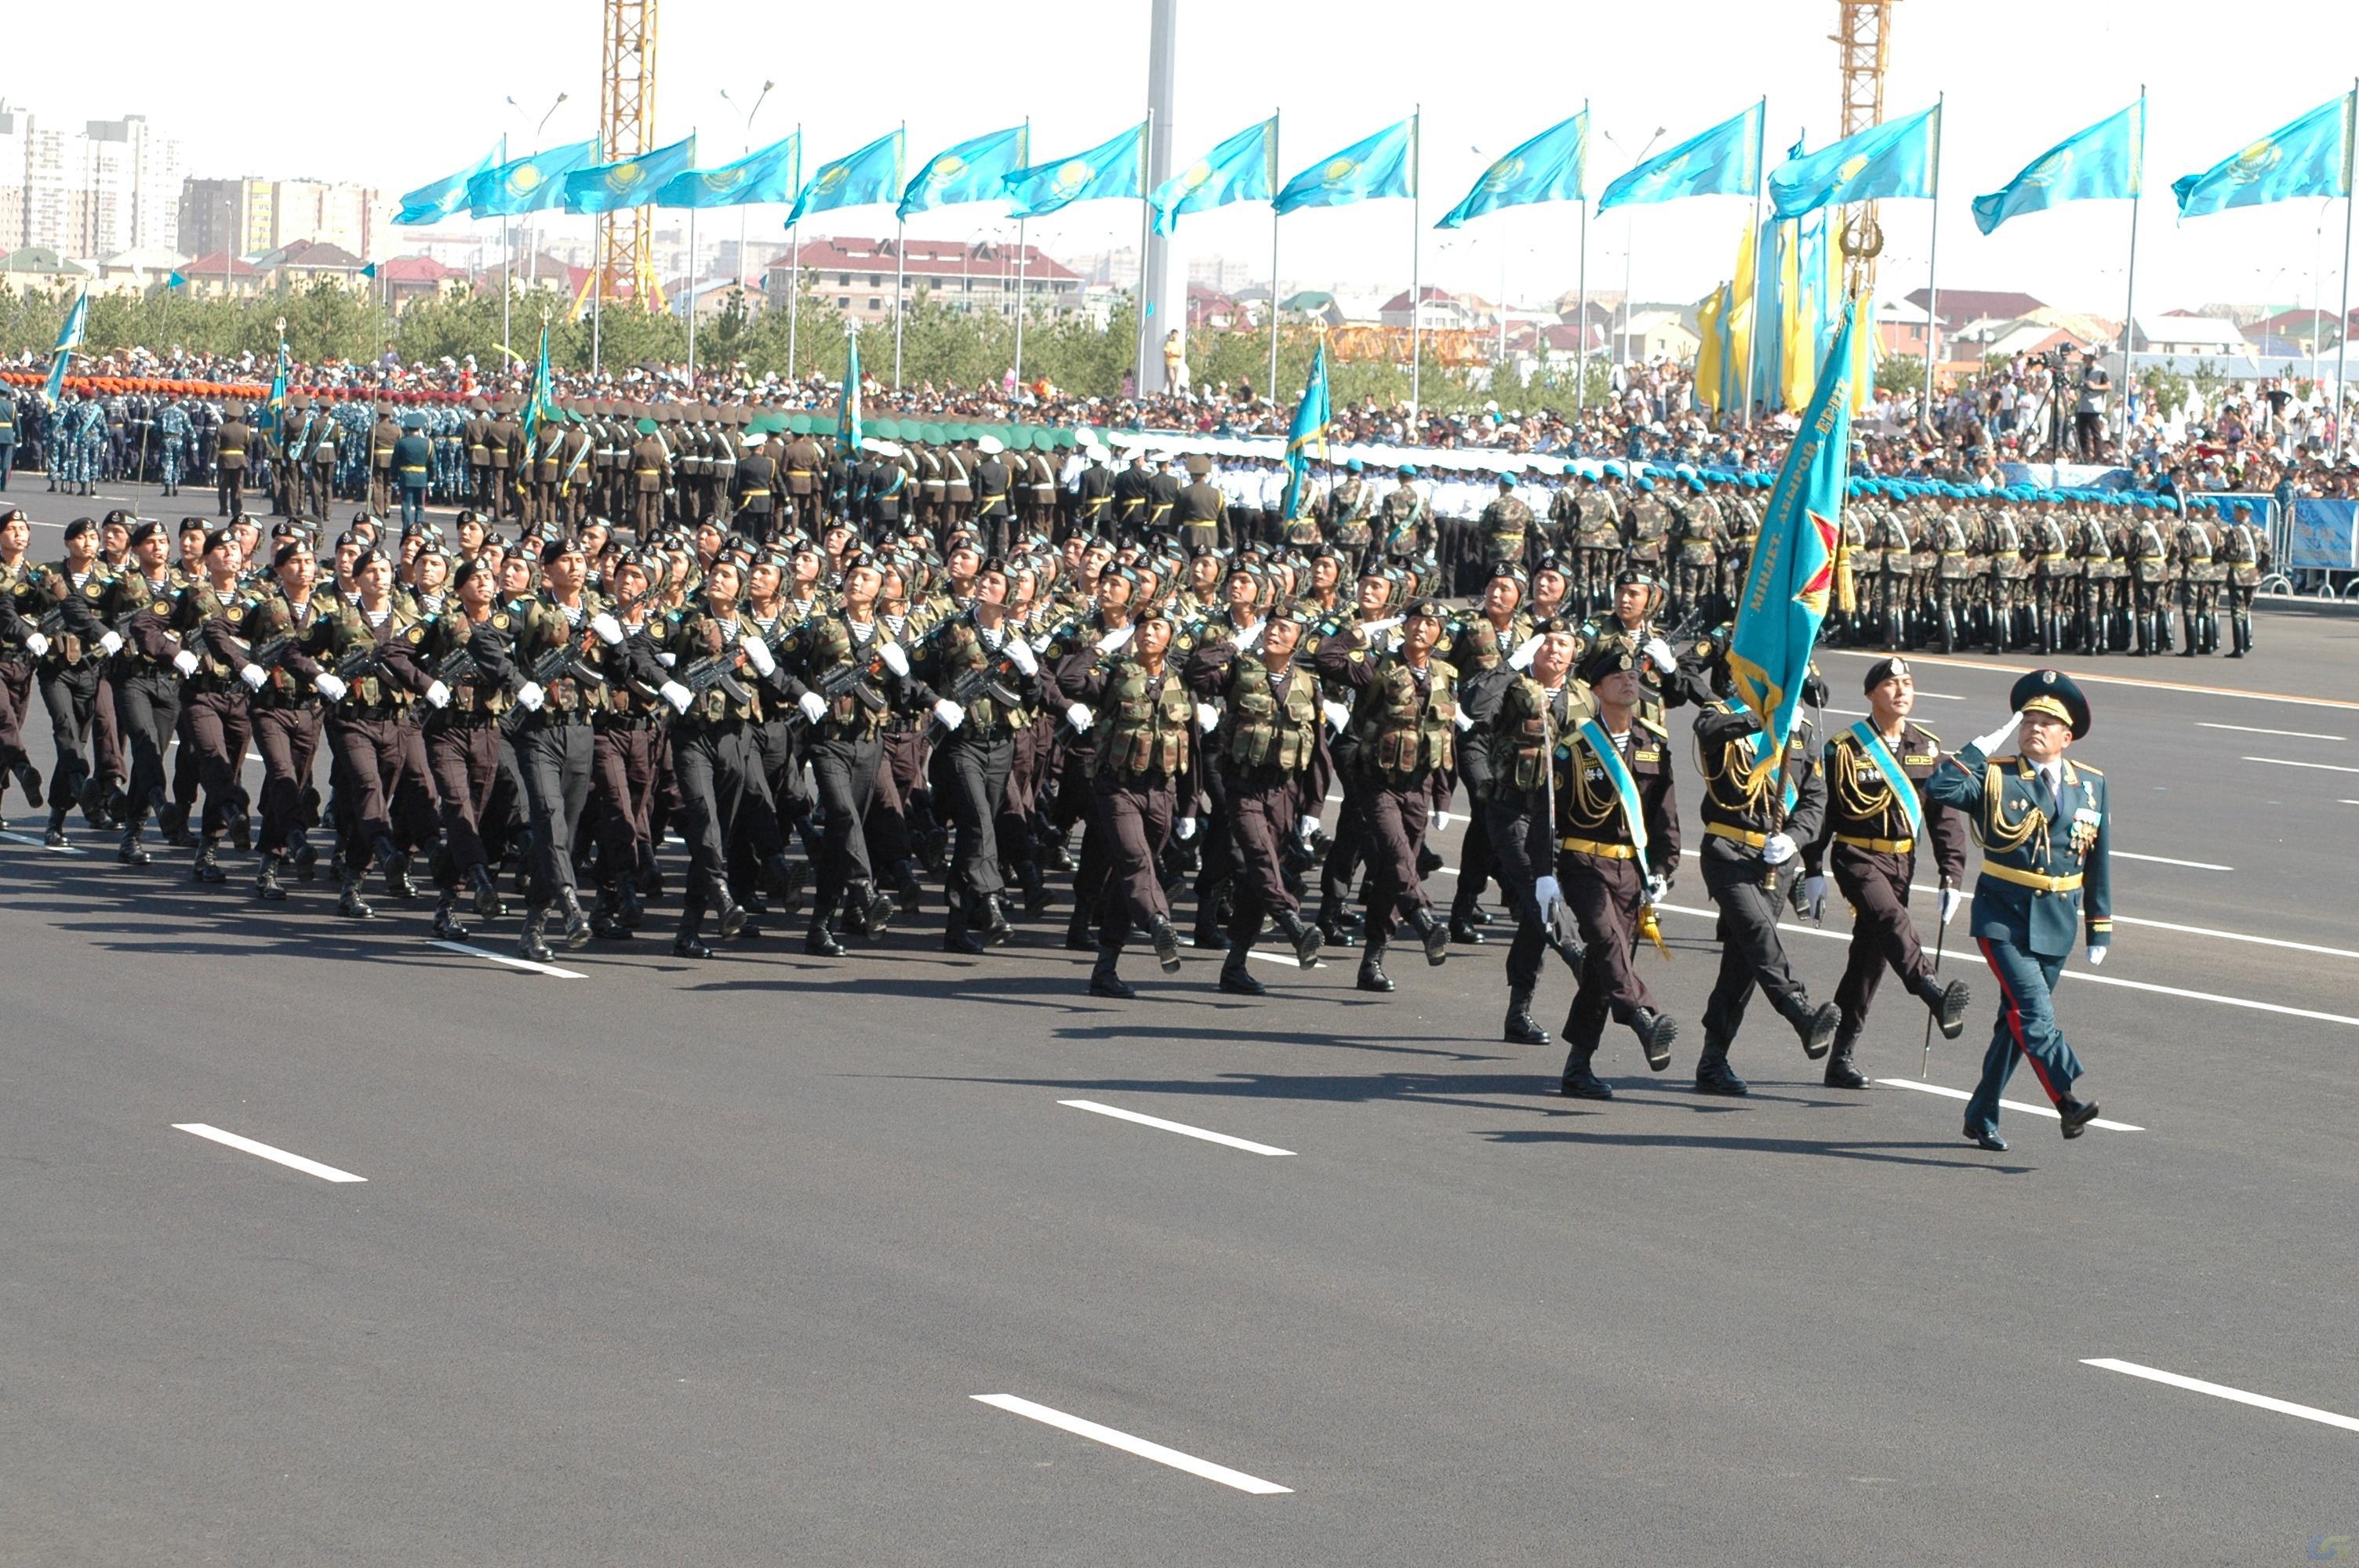 7 май 2012 года. Парад в Казахстане. Военный парад. Военный парад в Казахстане. Парад в Казахстане 9 мая.